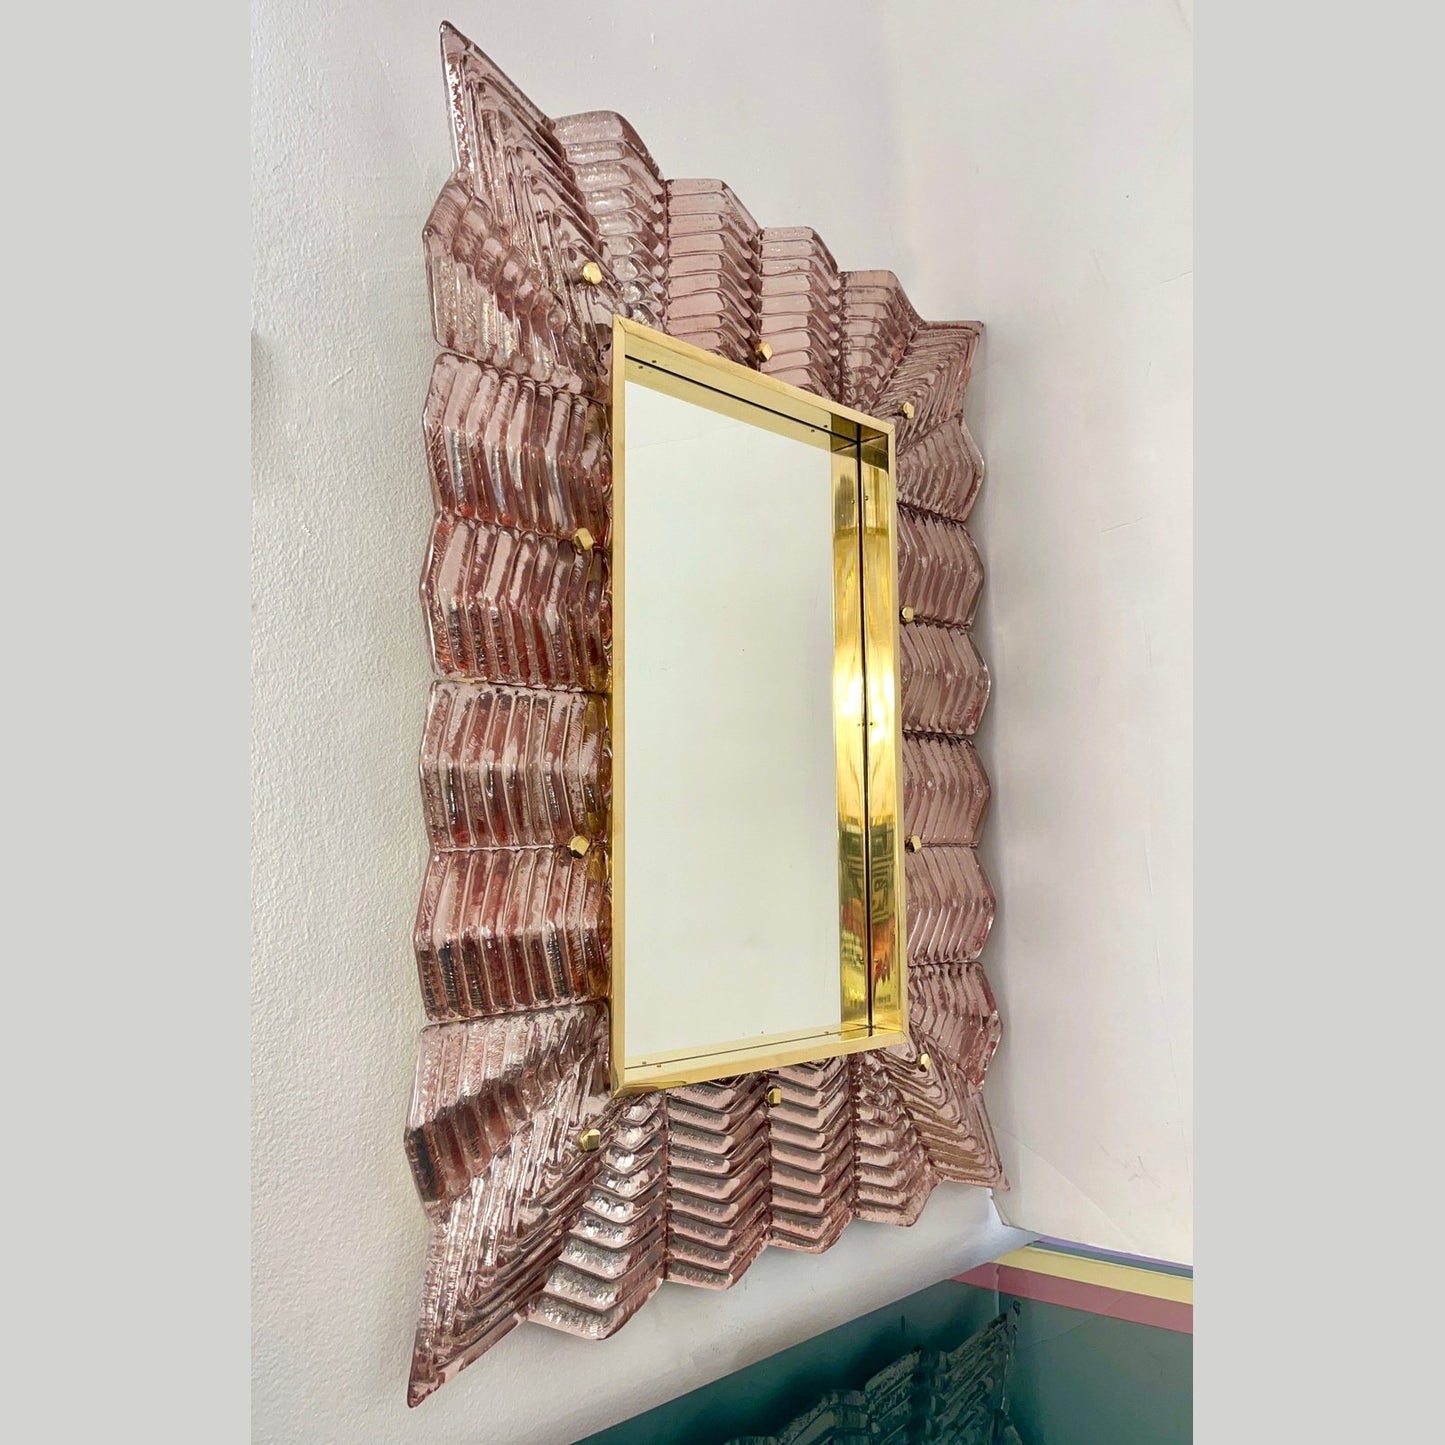 Bespoke Italian Art Deco Design Small Ruffled Pink Murano Glass Brass Mirror